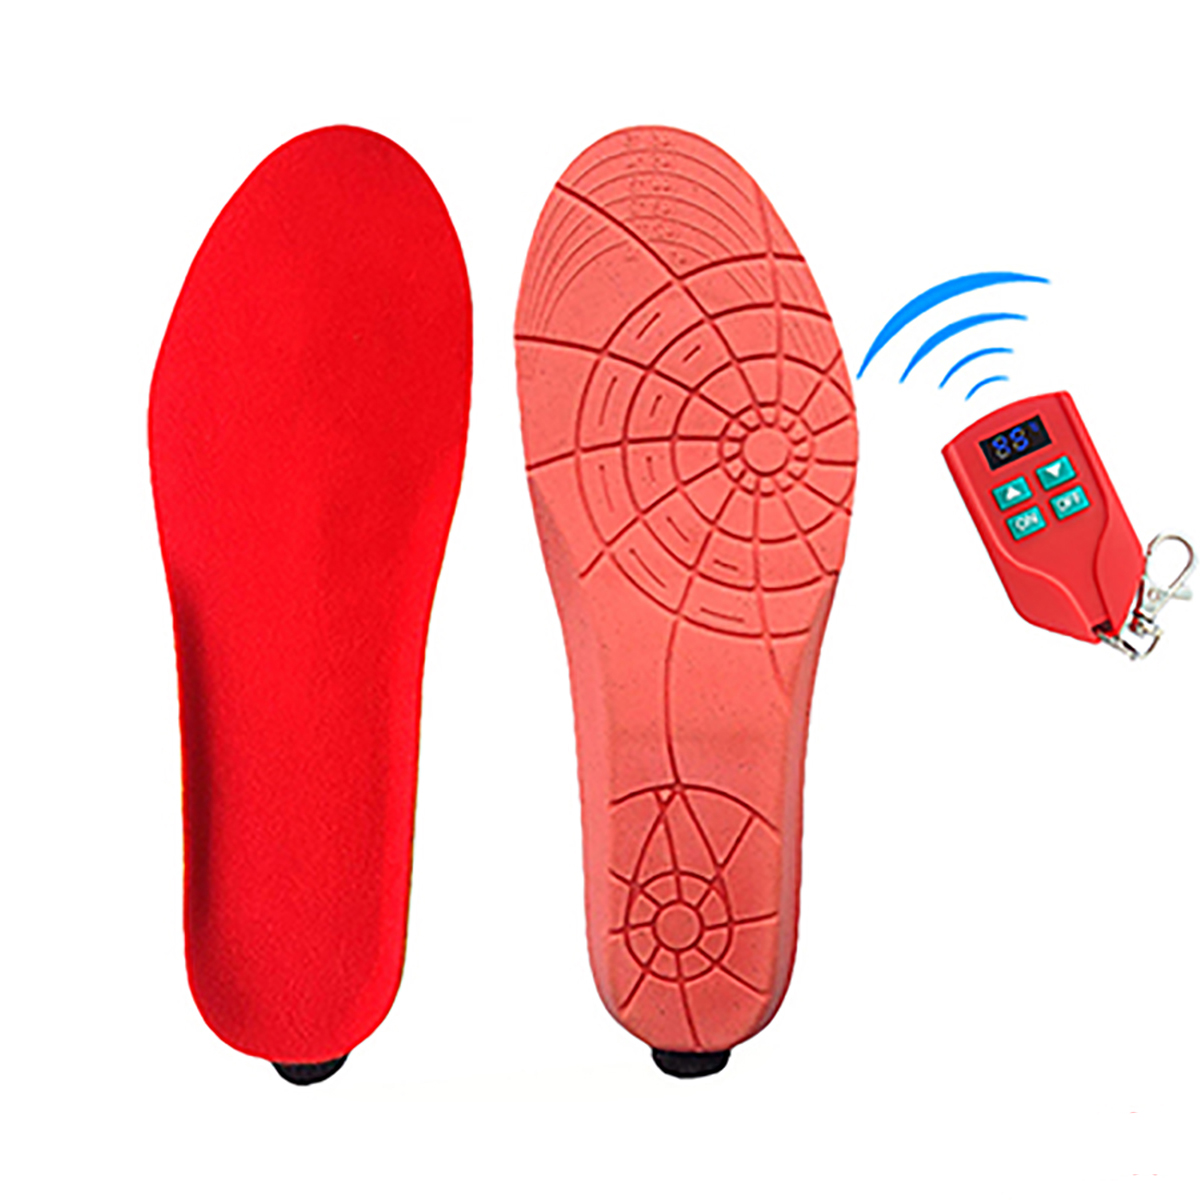 

41-46 Код Портативная беспроводная стелька с подогревом для обуви с подогревом для ног, аккумуляторная, 2000 мАч